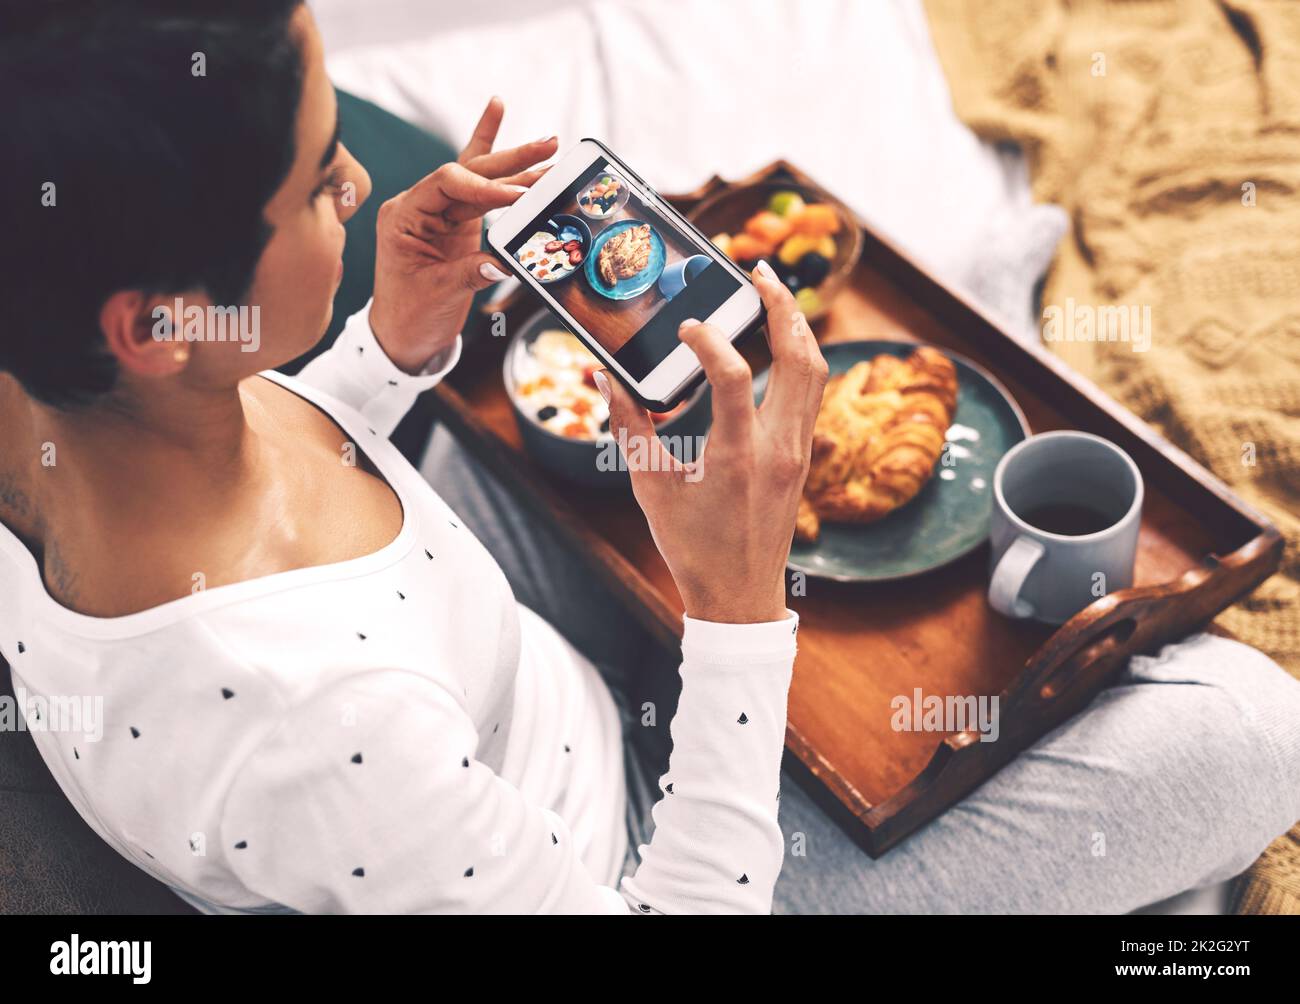 Faites-le pour le gramme. Prise de vue rognée d'une jeune femme attirante utilisant son téléphone portable pour prendre une photo de son plateau de petit déjeuner à la maison. Banque D'Images